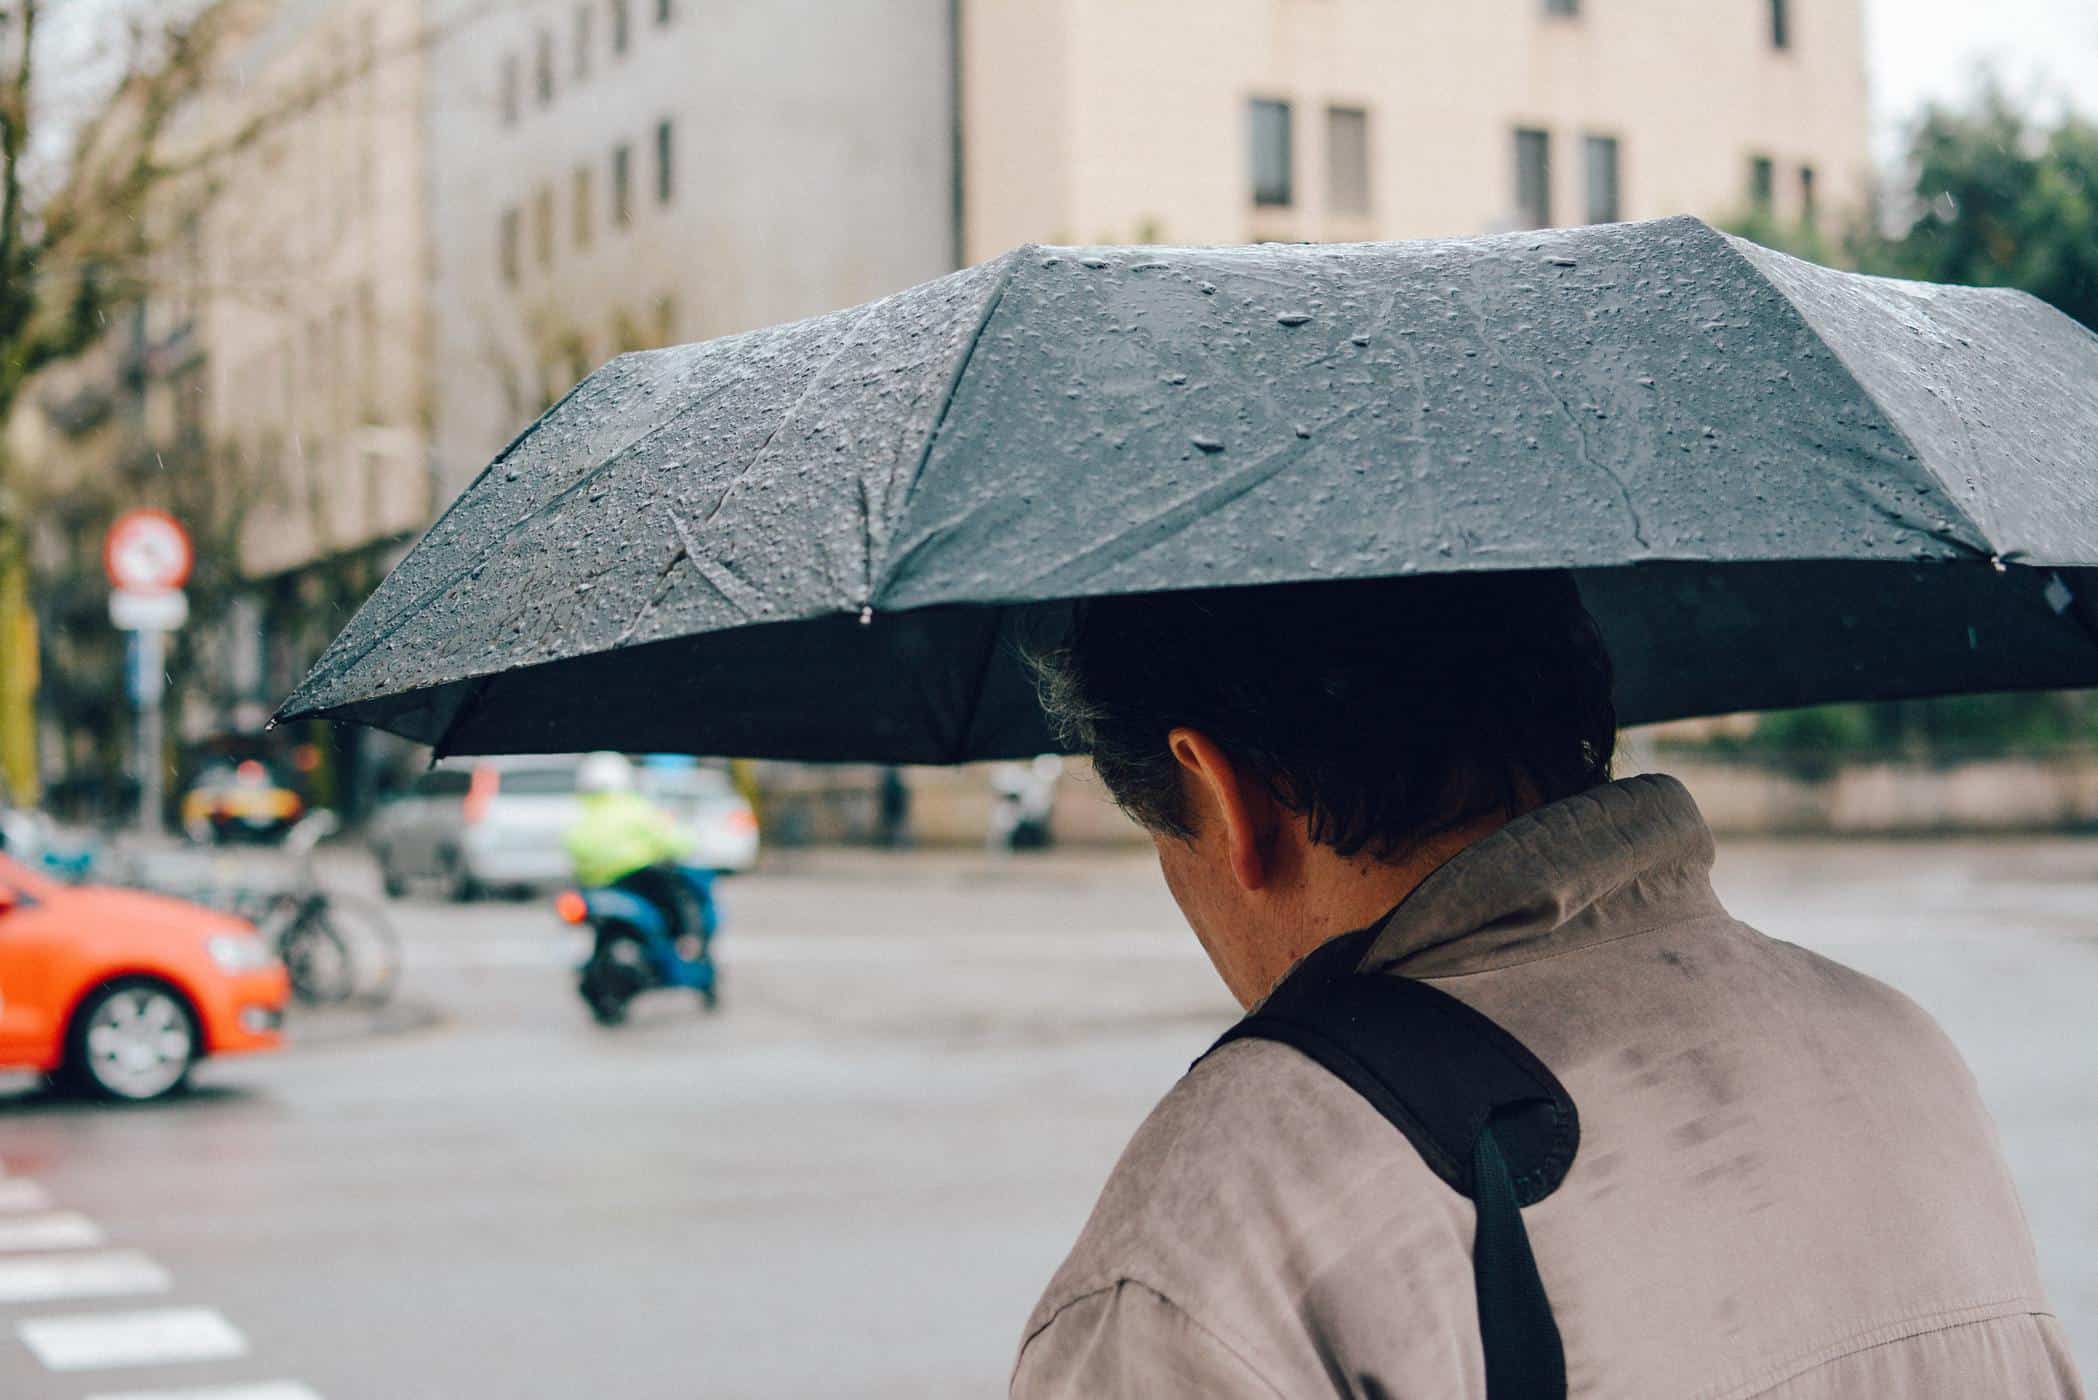 גשם יכול לעשות אותך חולה, הנה 4 טיפים רבי עוצמה כדי למנוע זאת